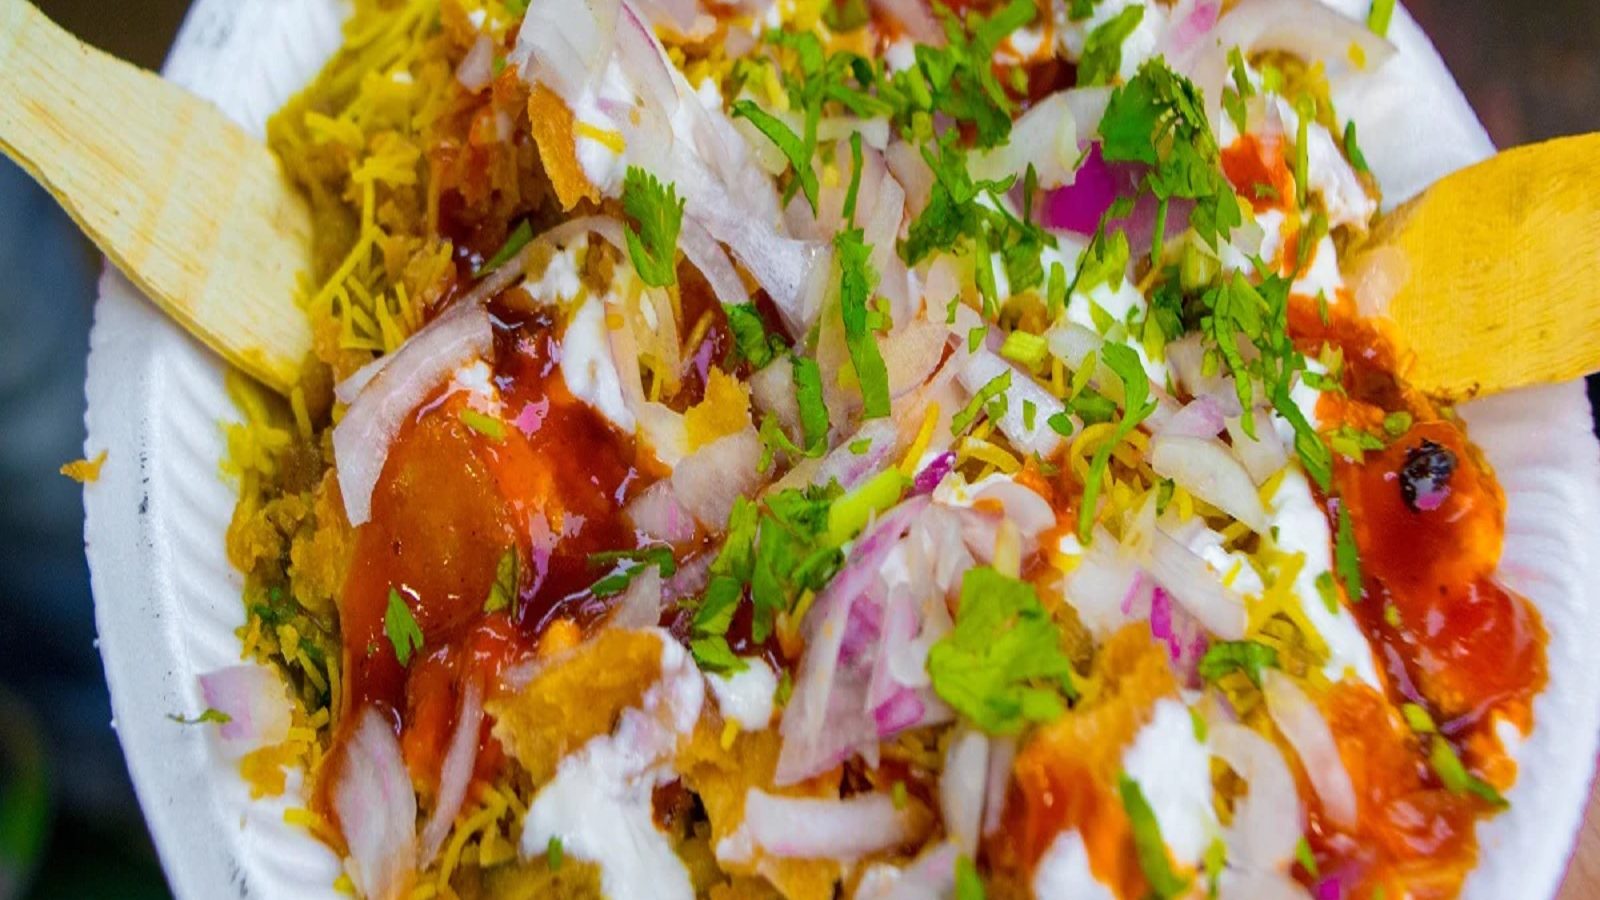 Indian Road Meals: स्ट्रीट फूड लवर्स के लिए जन्नत से कम नहीं हैं भारत के ये 6 शहर